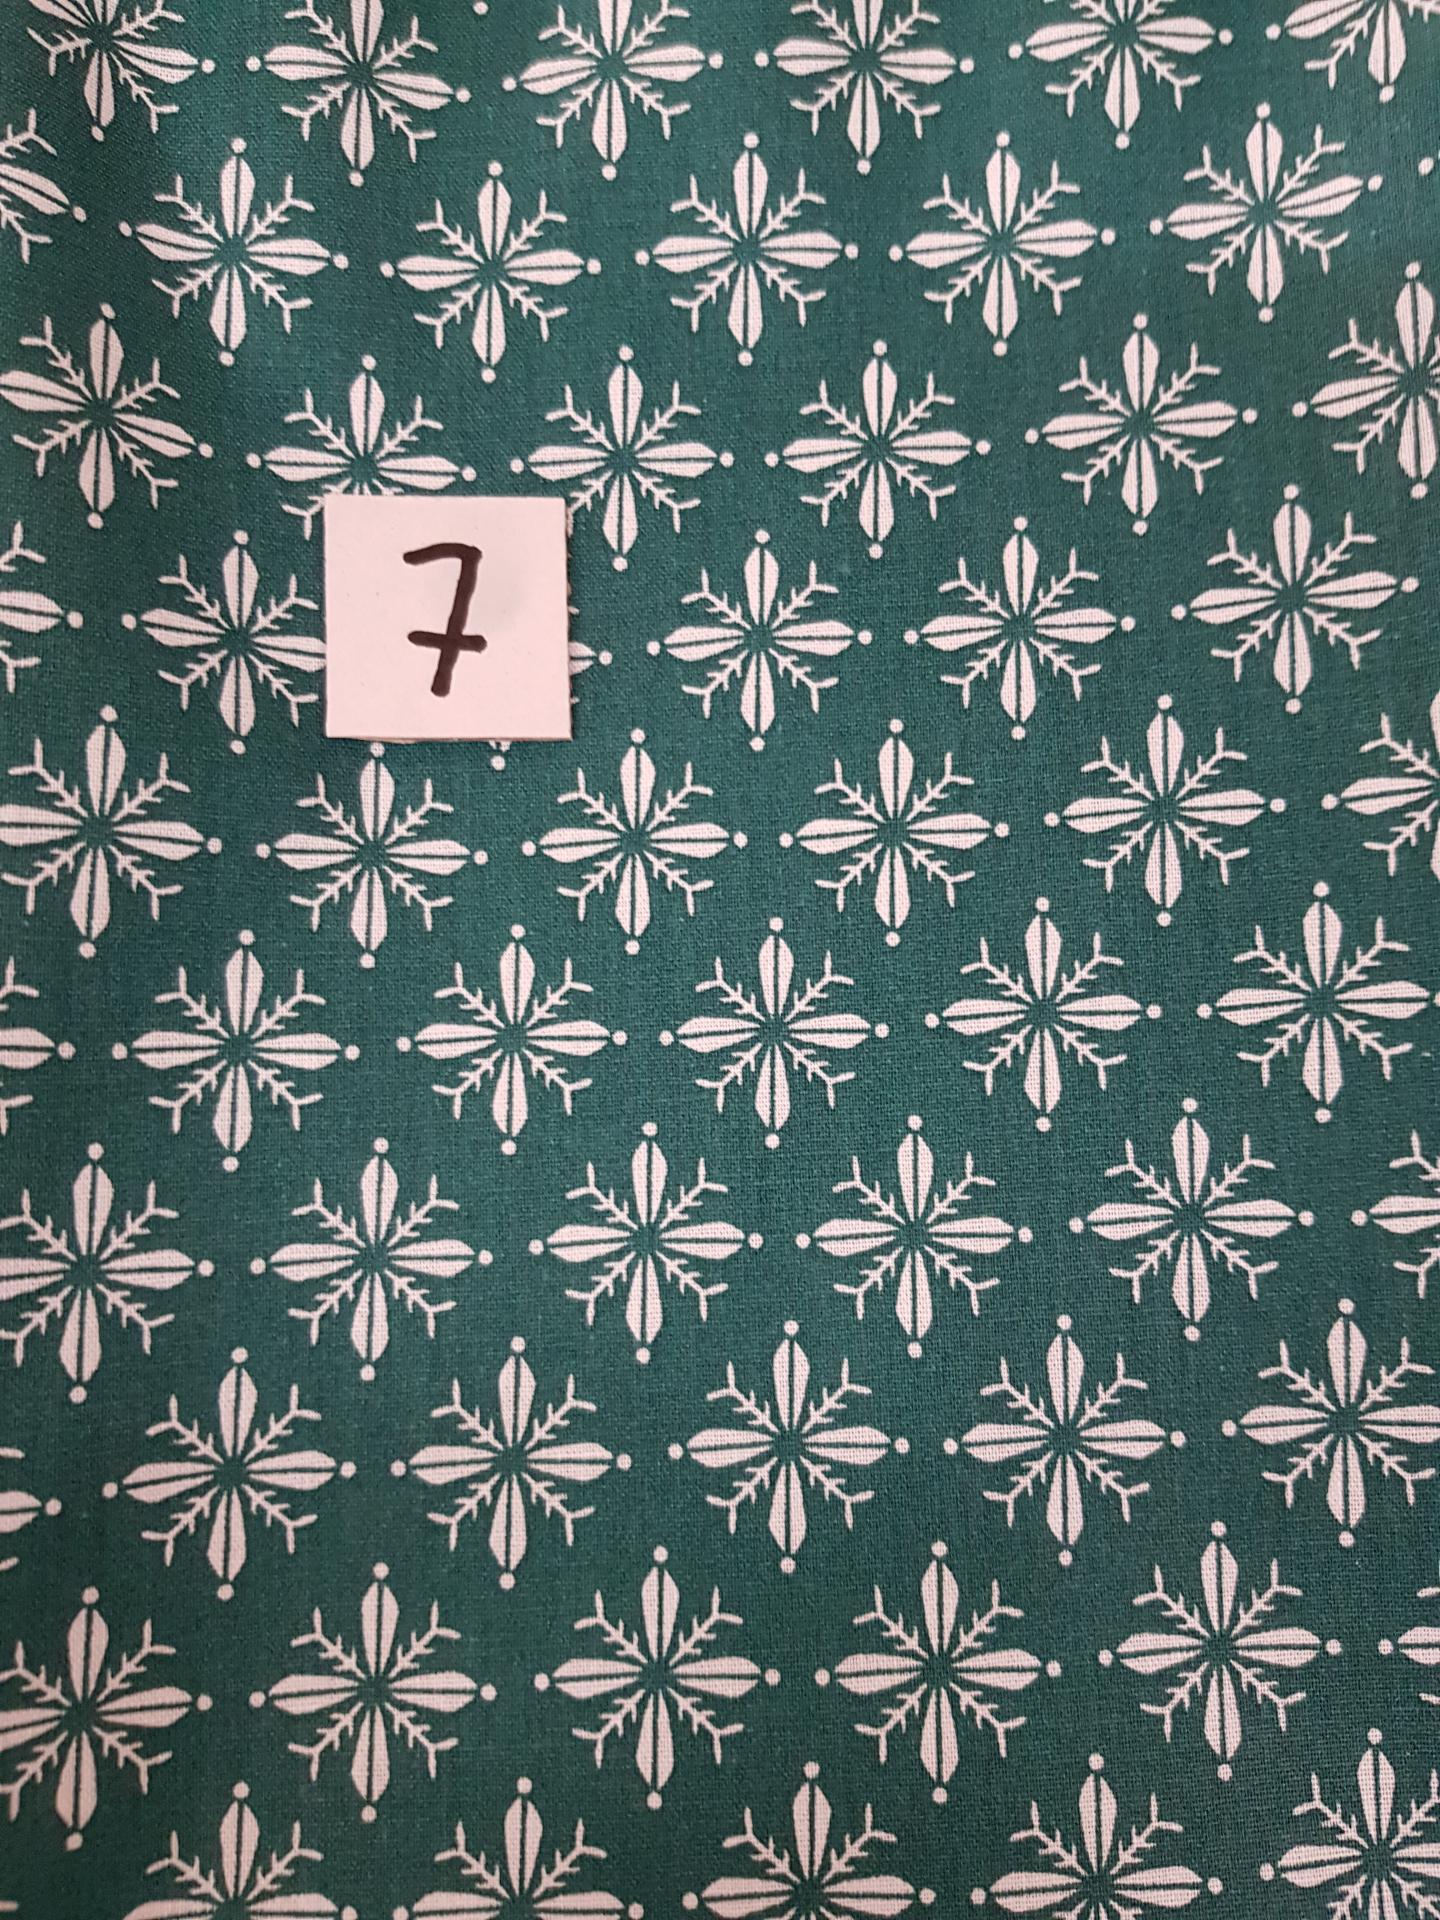 7 tissus lingettes vert fleurs 7 1